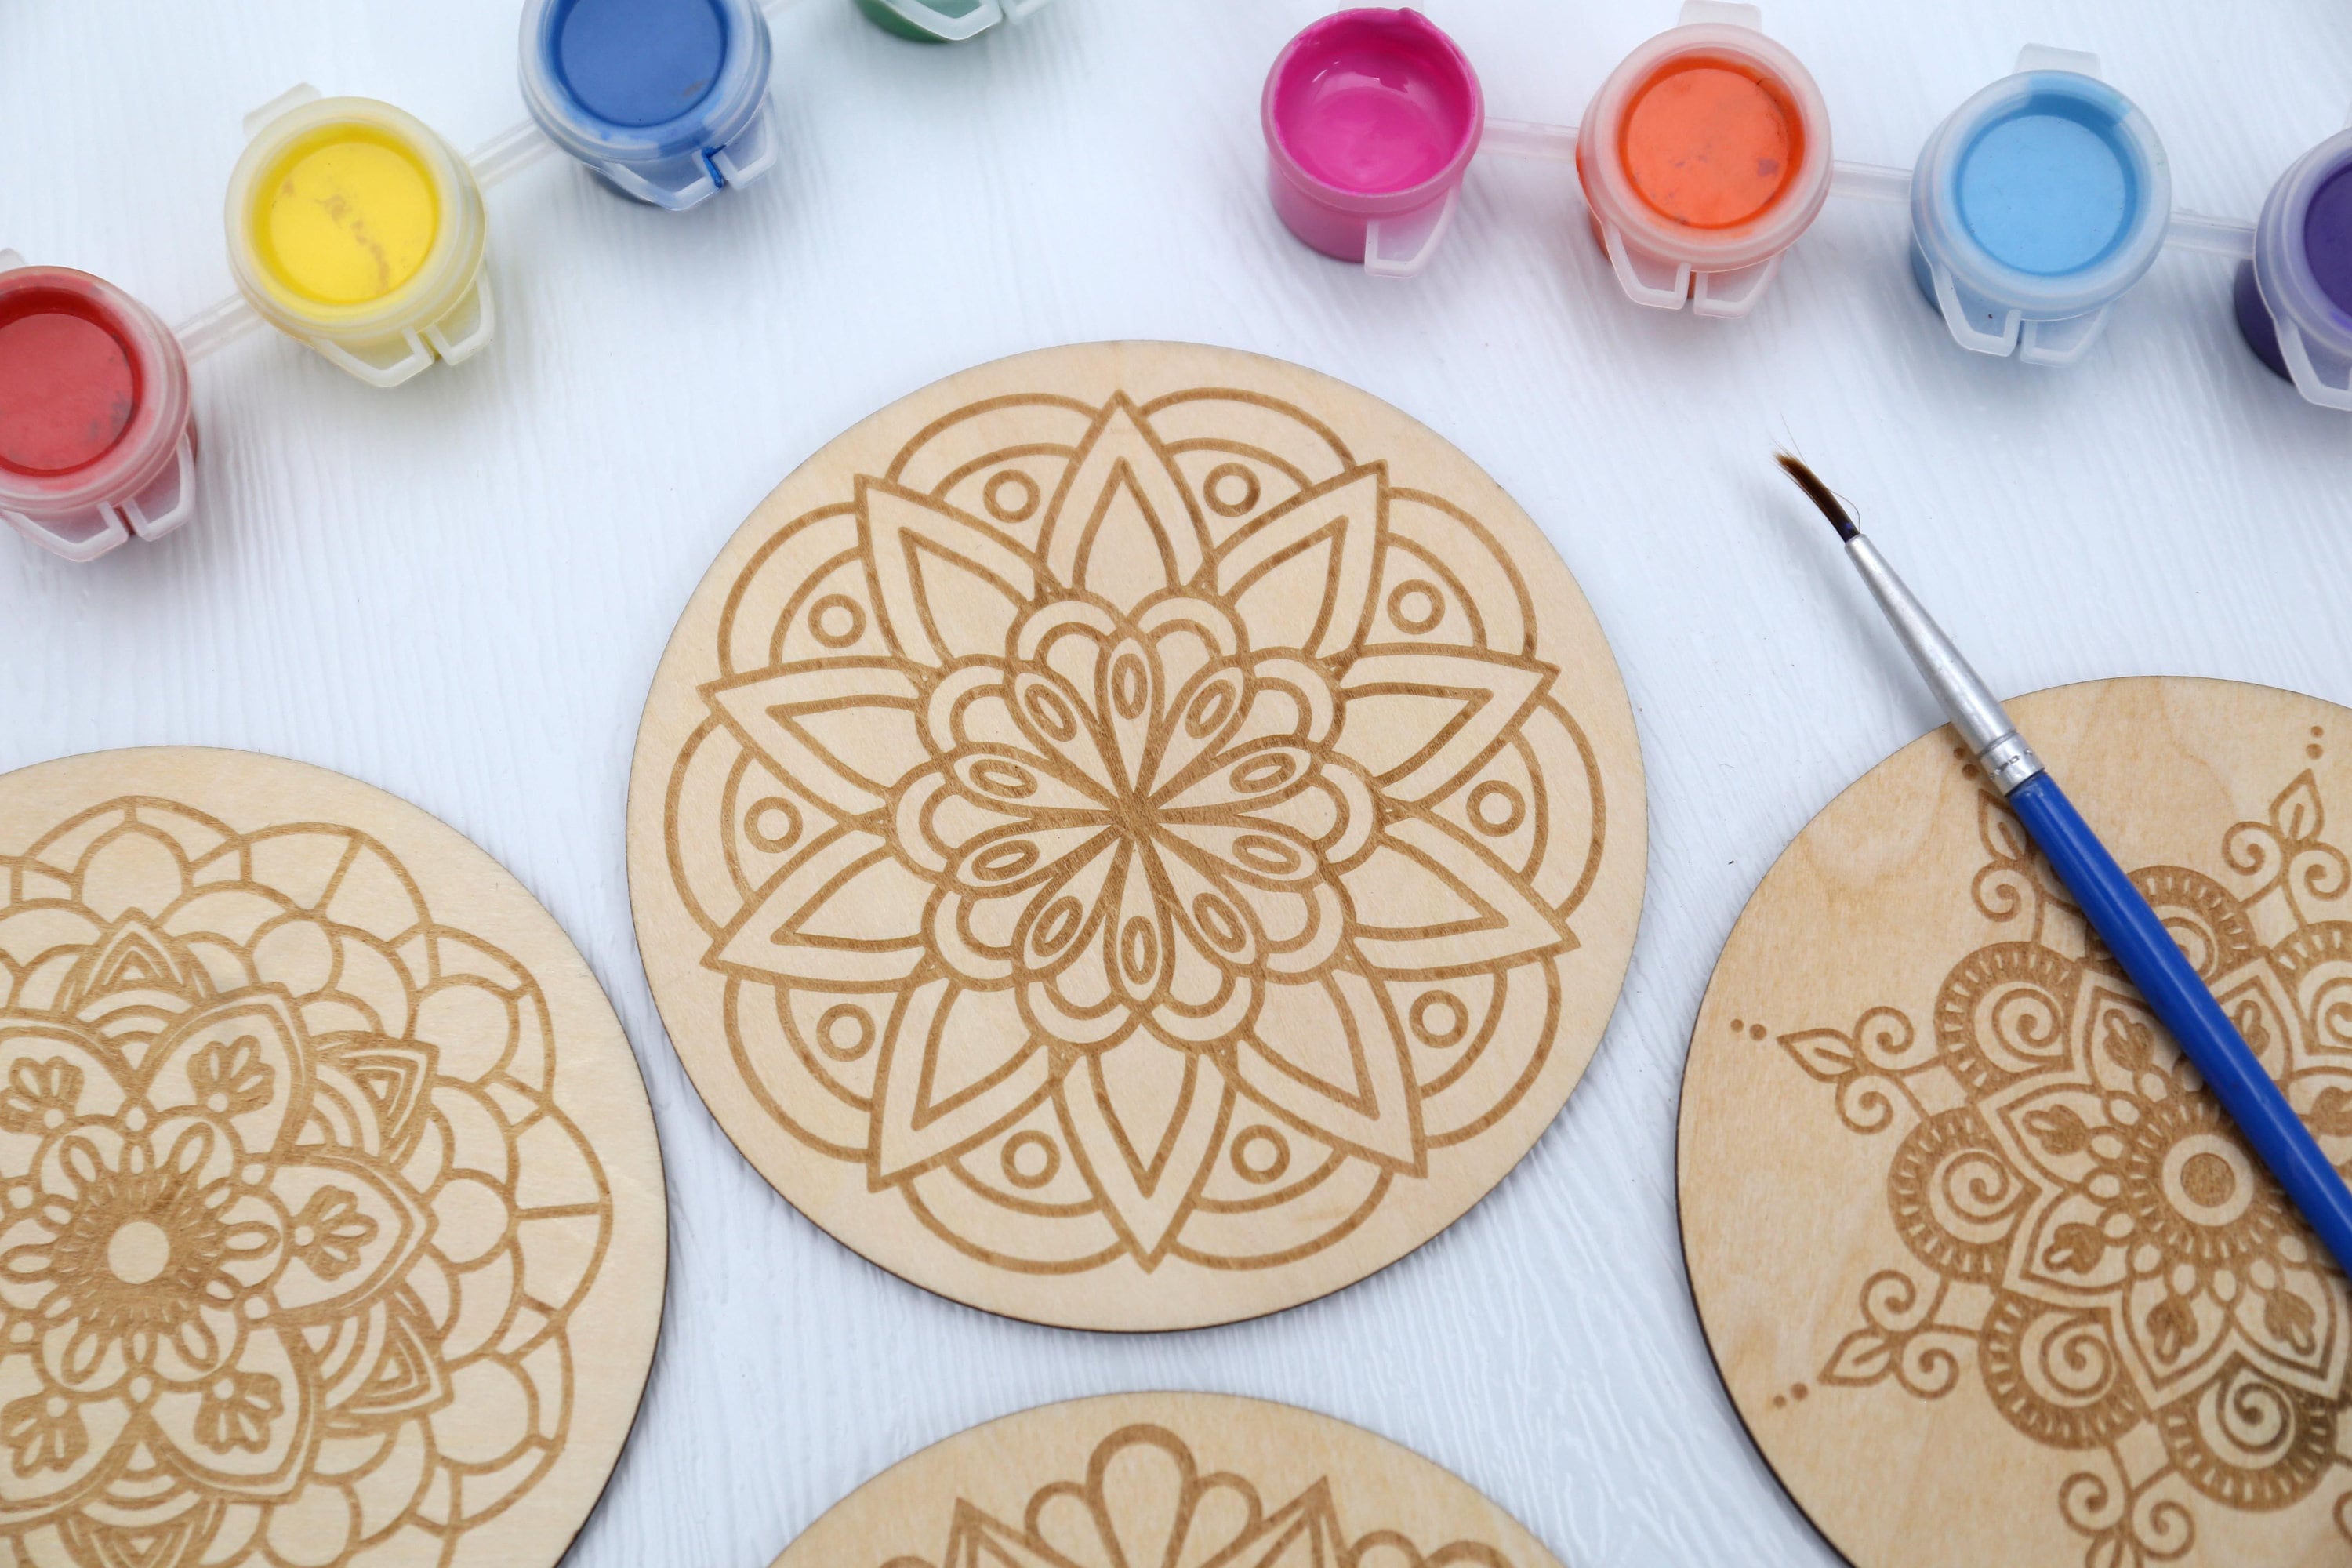 DIY Mandalas Wooden Coaster Painting 'Kit-A', DIY Art & Craft Kit (T298)  at Rs 315.00, Wooden Coasters